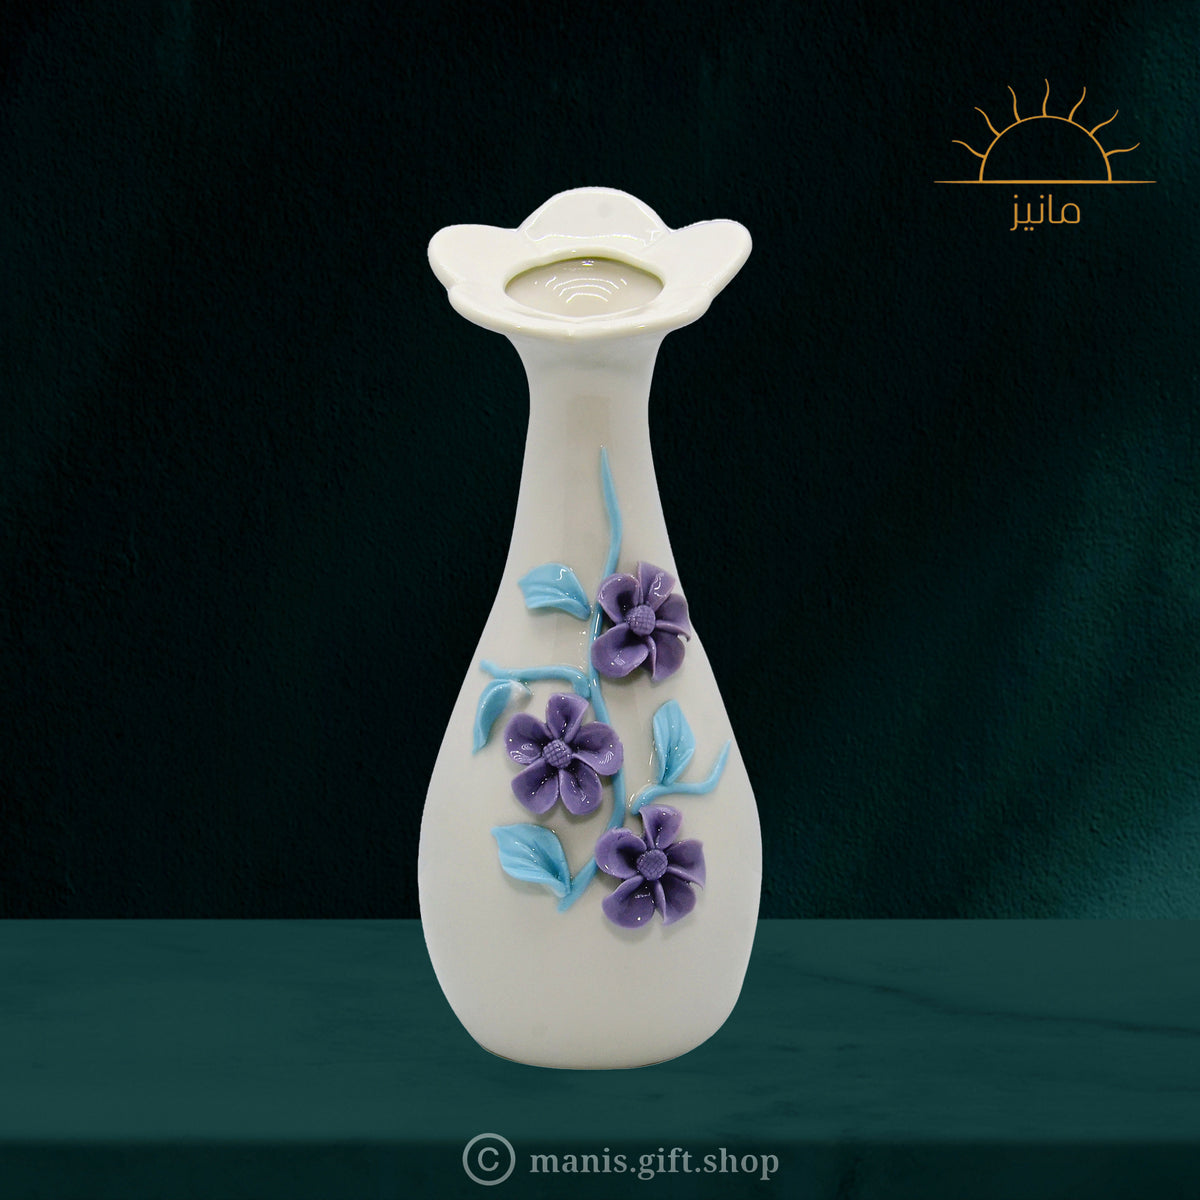 Floral Vase With Purpule Flower